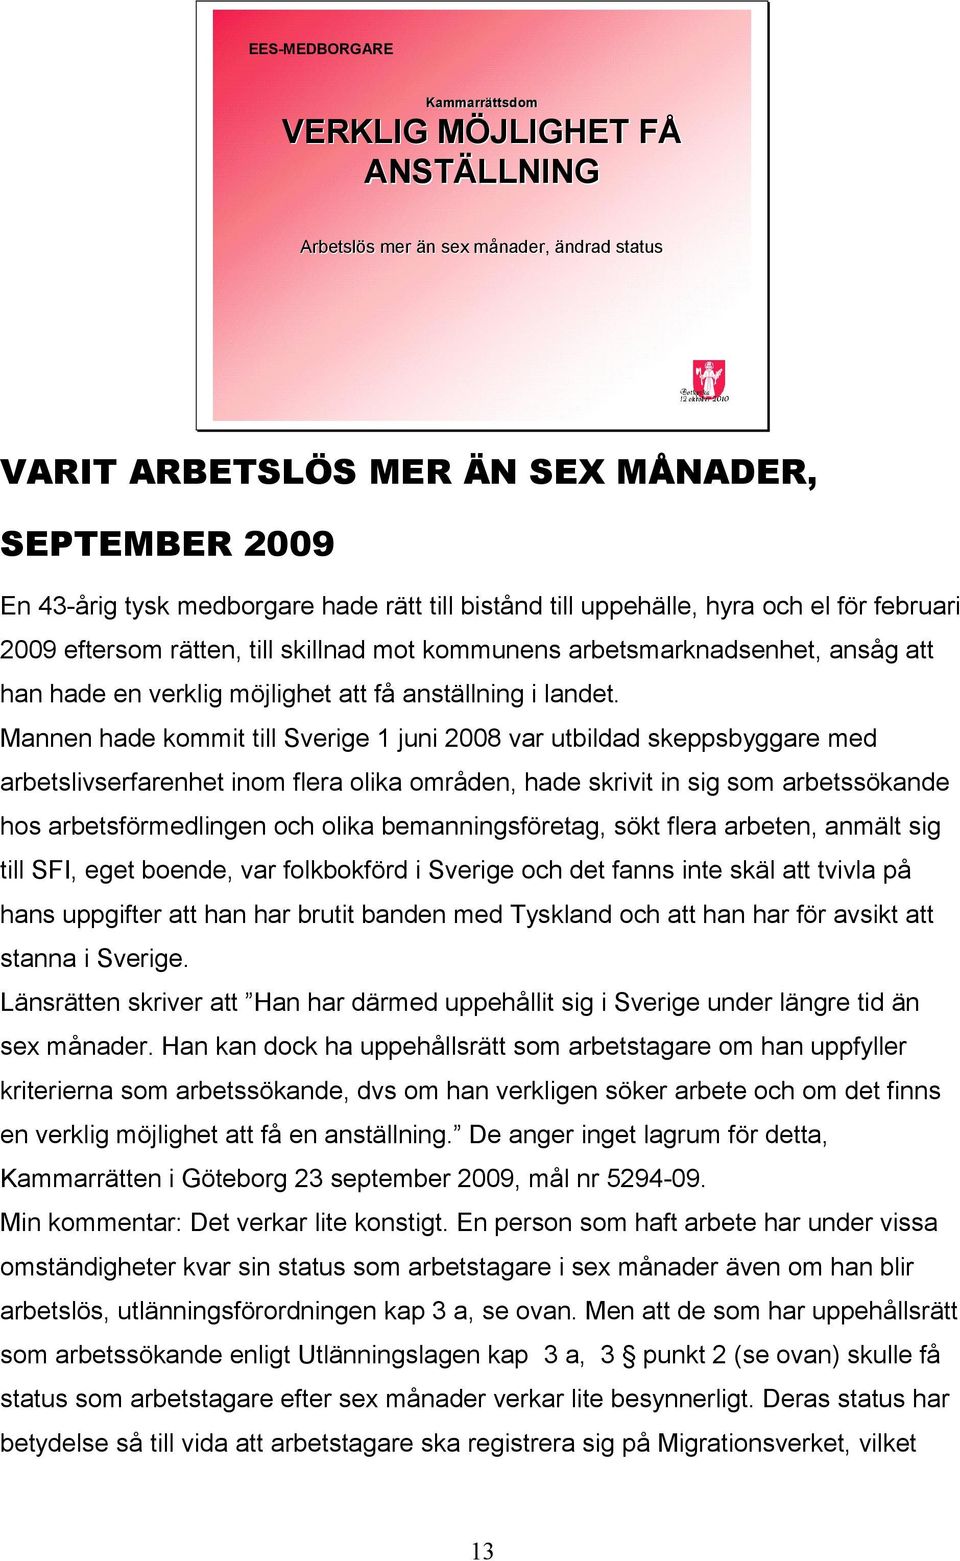 Mannen hade kommit till Sverige 1 juni 2008 var utbildad skeppsbyggare med arbetslivserfarenhet inom flera olika områden, hade skrivit in sig som arbetssökande hos arbetsförmedlingen och olika